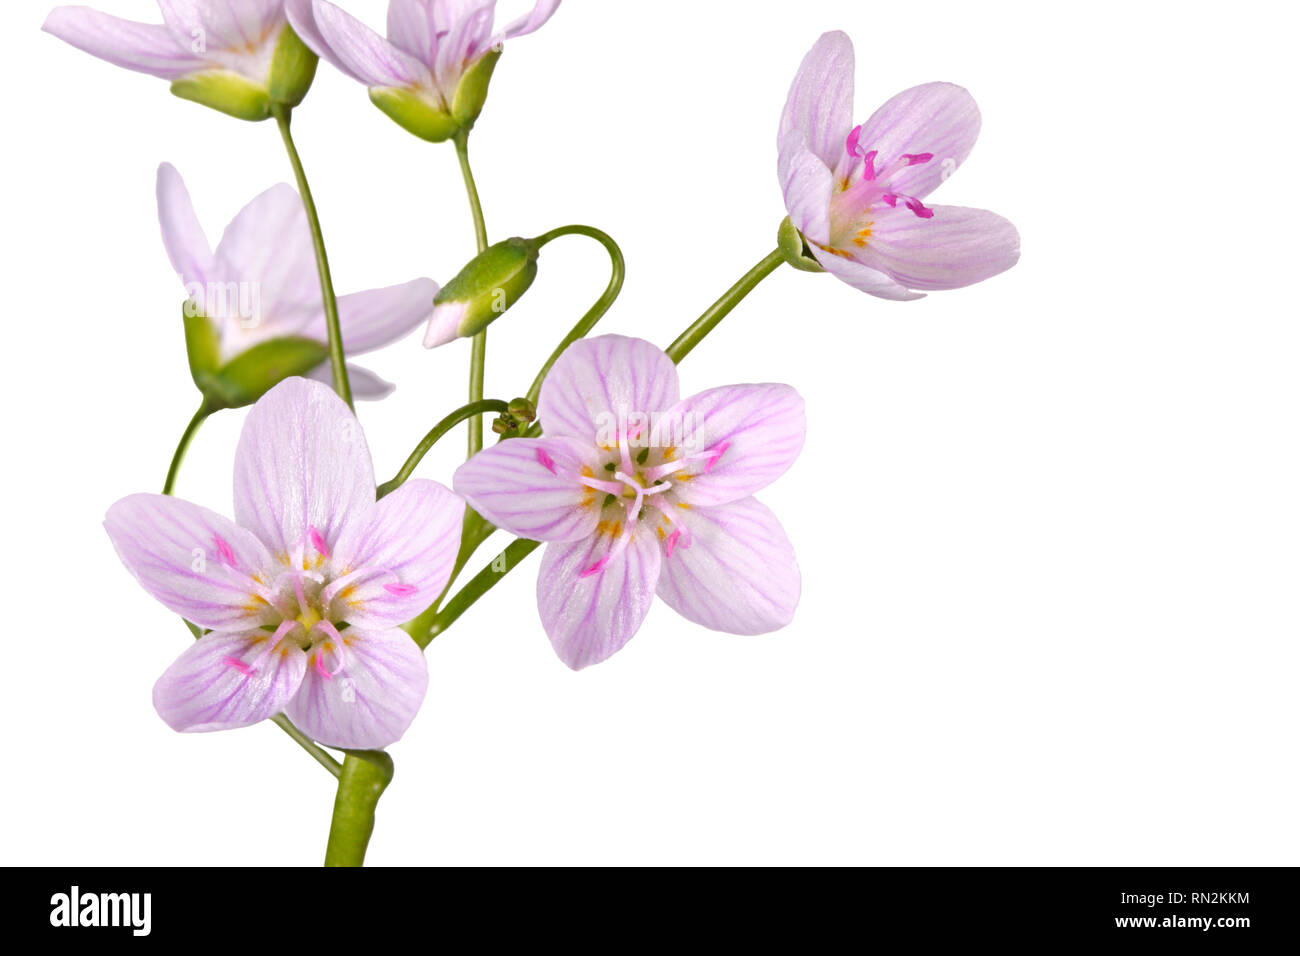 Stamm mit mehreren geöffneten Blüten der Feder Schönheit wildflower (Claytonia virginica) gegen einen weißen Hintergrund isoliert Stockfoto